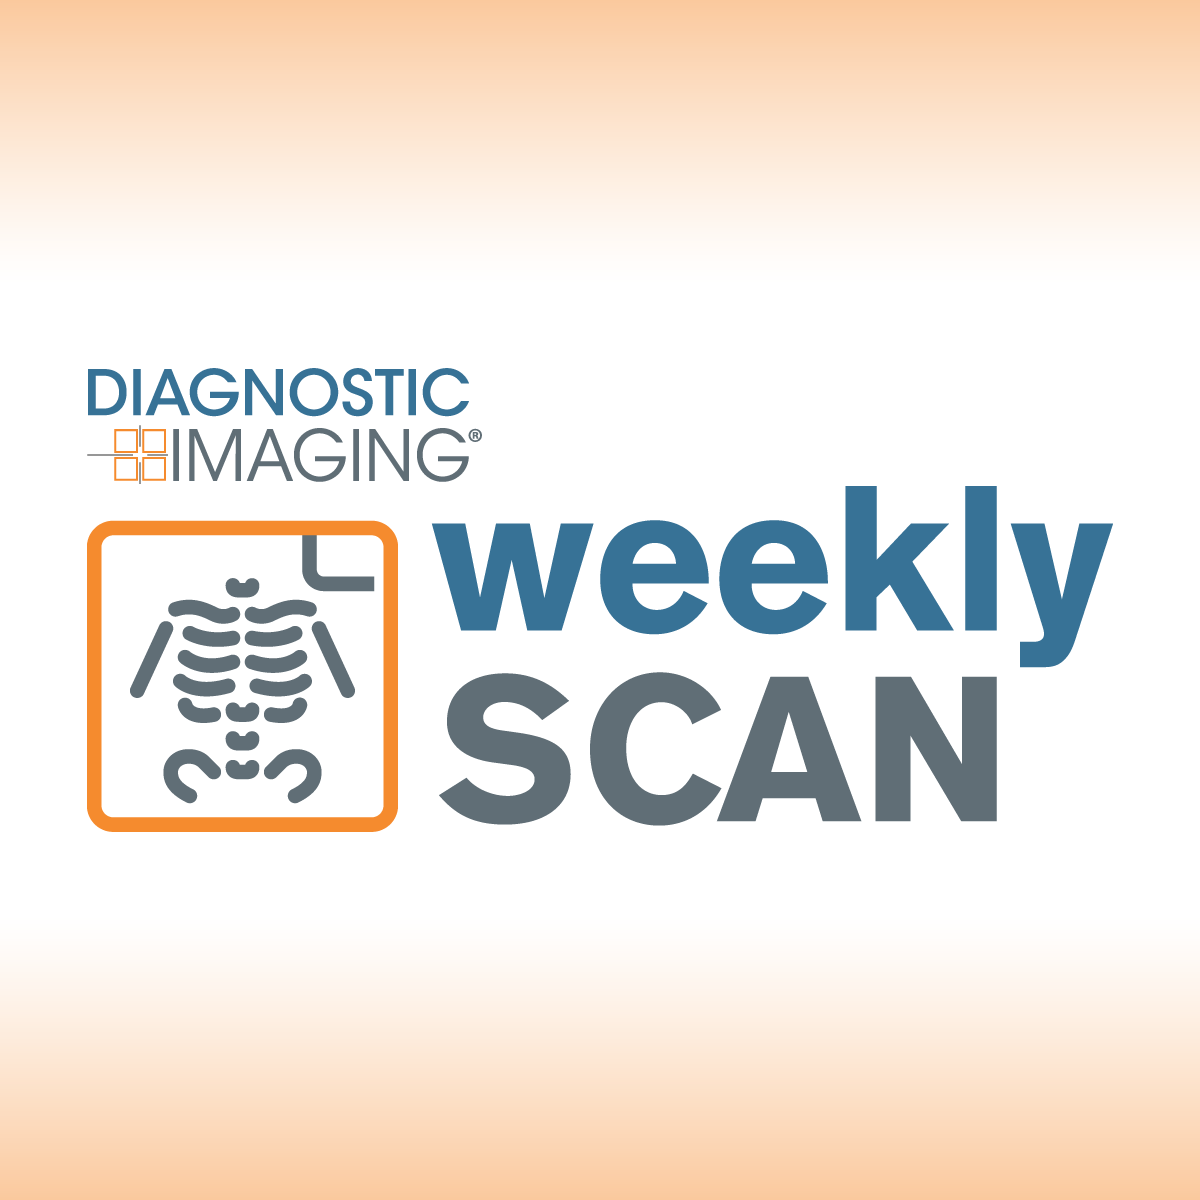 Diagnostic Imaging's Weekly Scan: April 14-April 20